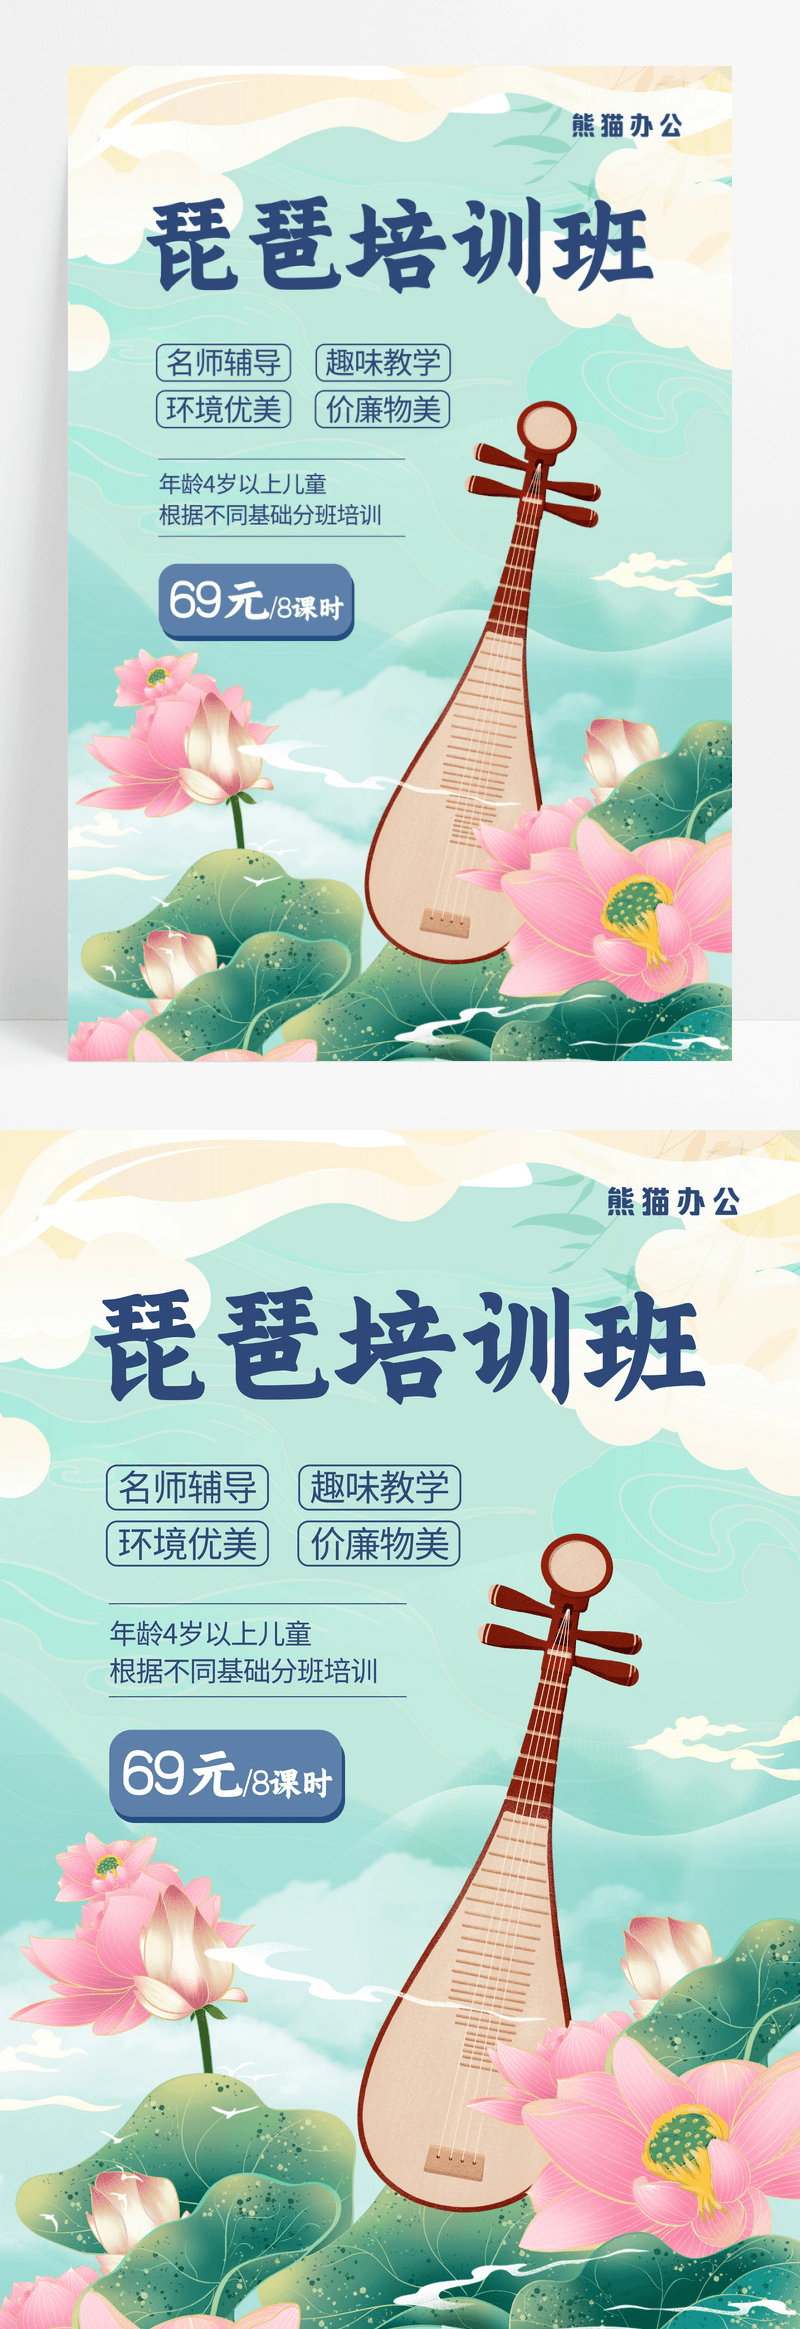 中国风传统文化琵琶艺术类乐器培训招生海报